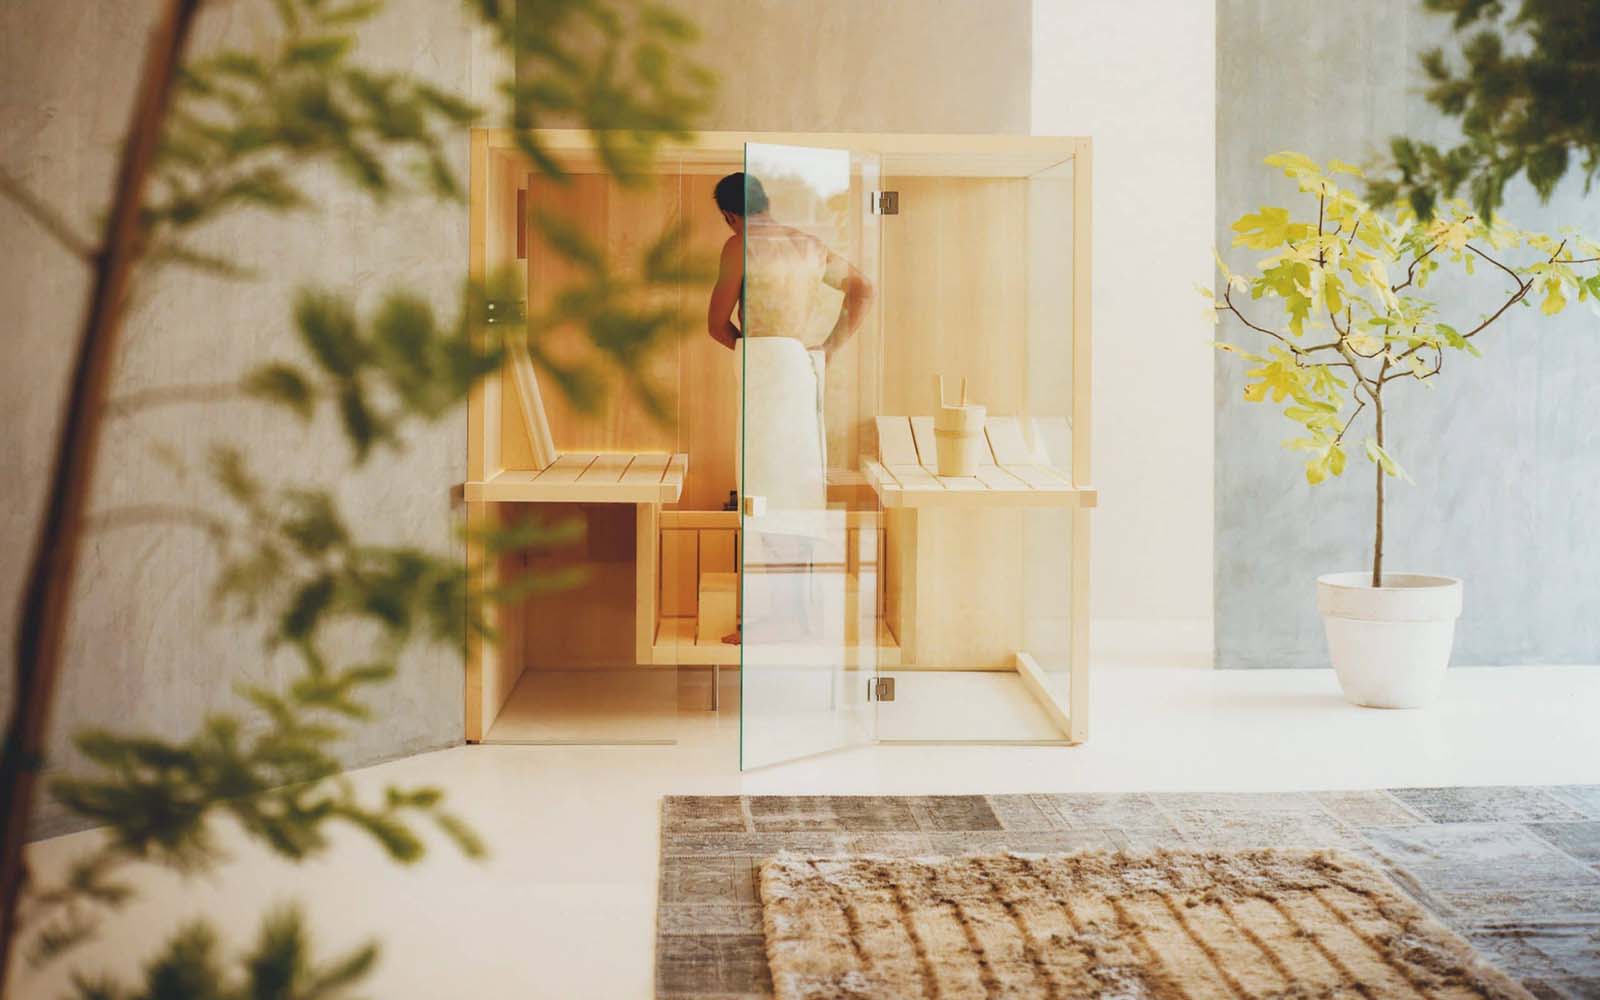 luxe maatwerk sauna in 3 soorten hout italiaans design effegibi air verkrijgbaar via Noctum Rotterdam